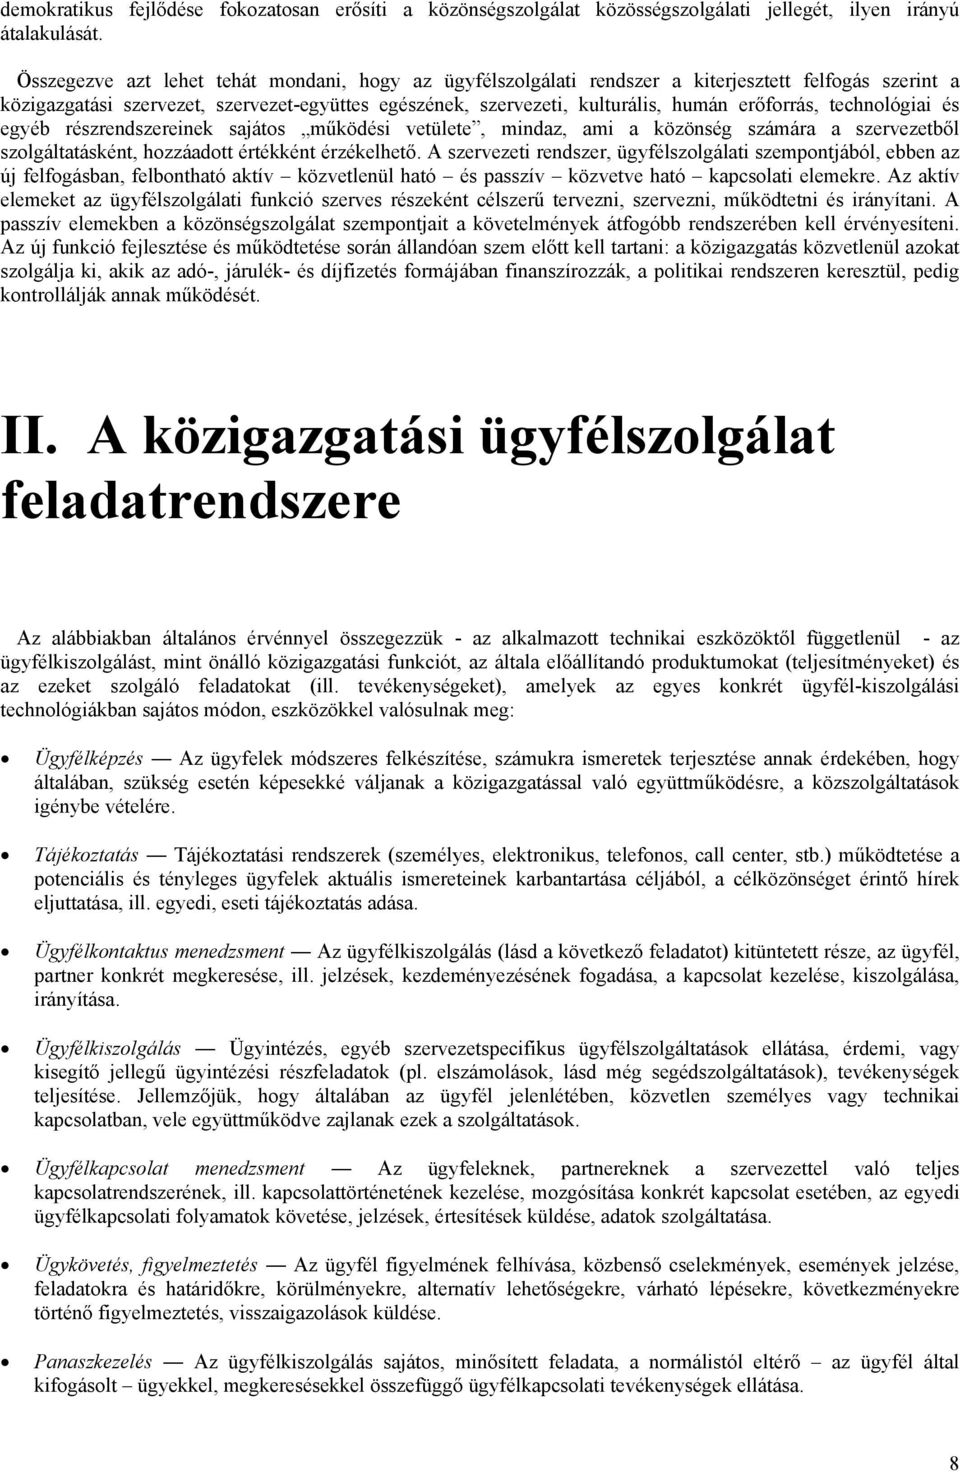 Átalakult az OTP Bank egyik fontos üzletága: mire számítsanak az ügyfelek? - bobtailklub.hu